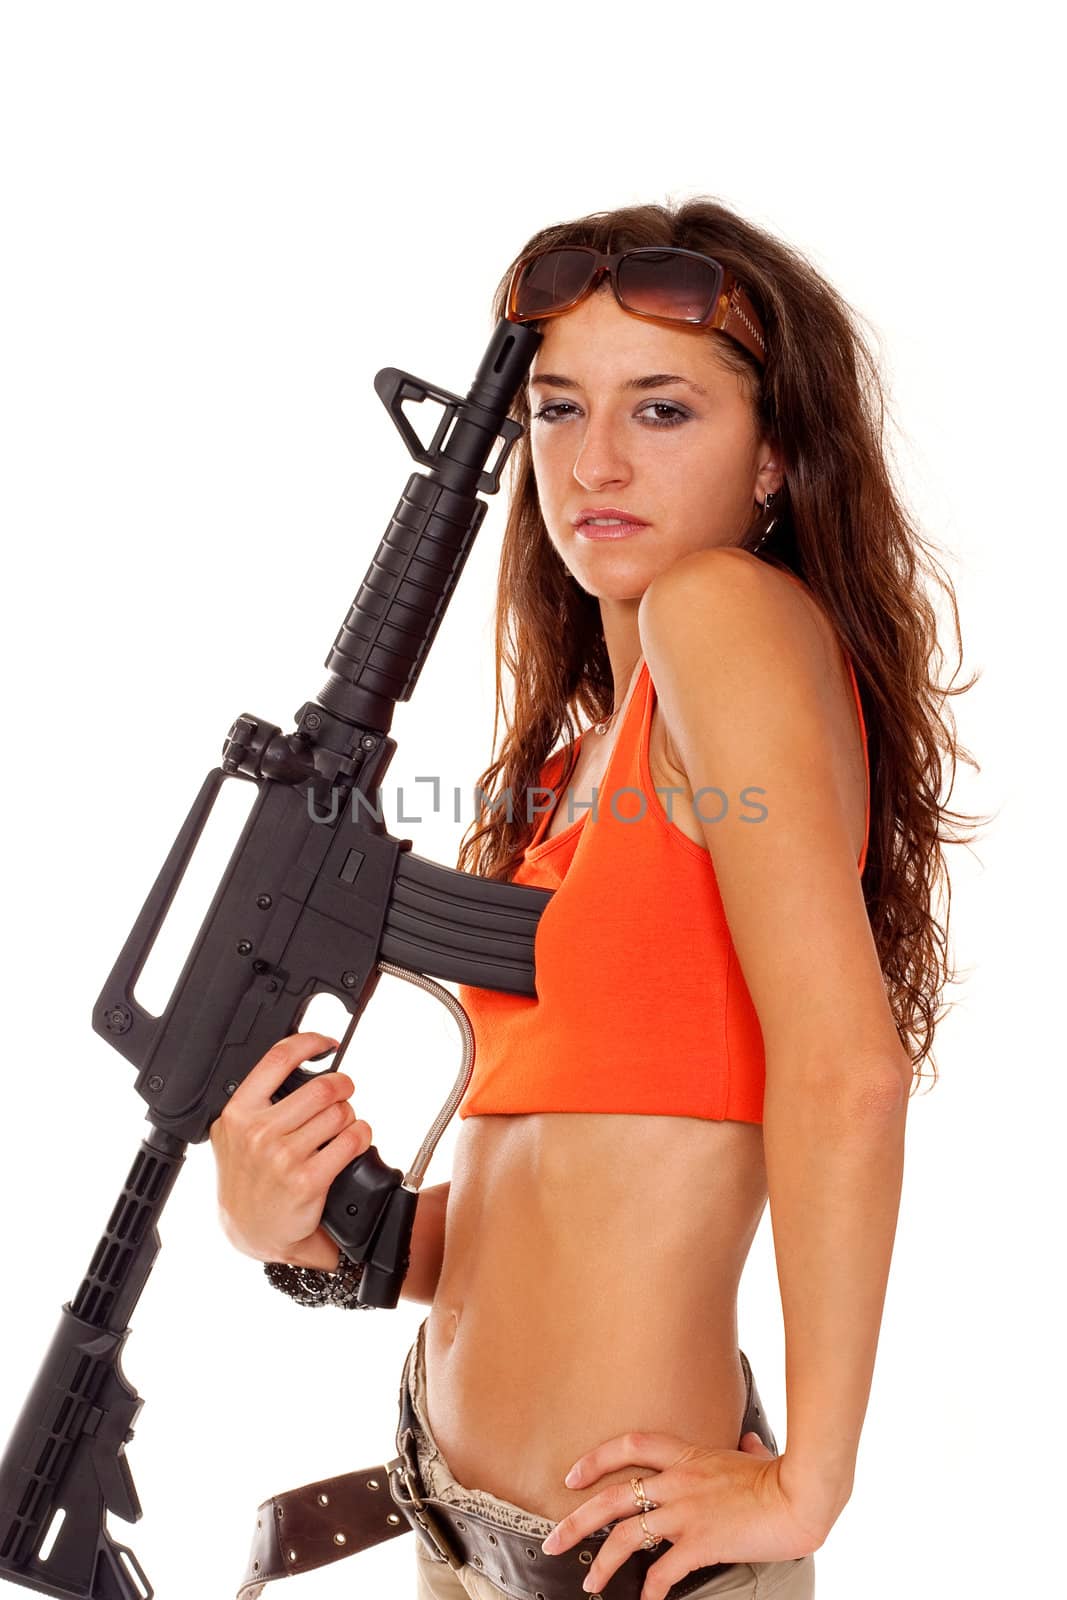 Armed girl posing by igor_stramyk